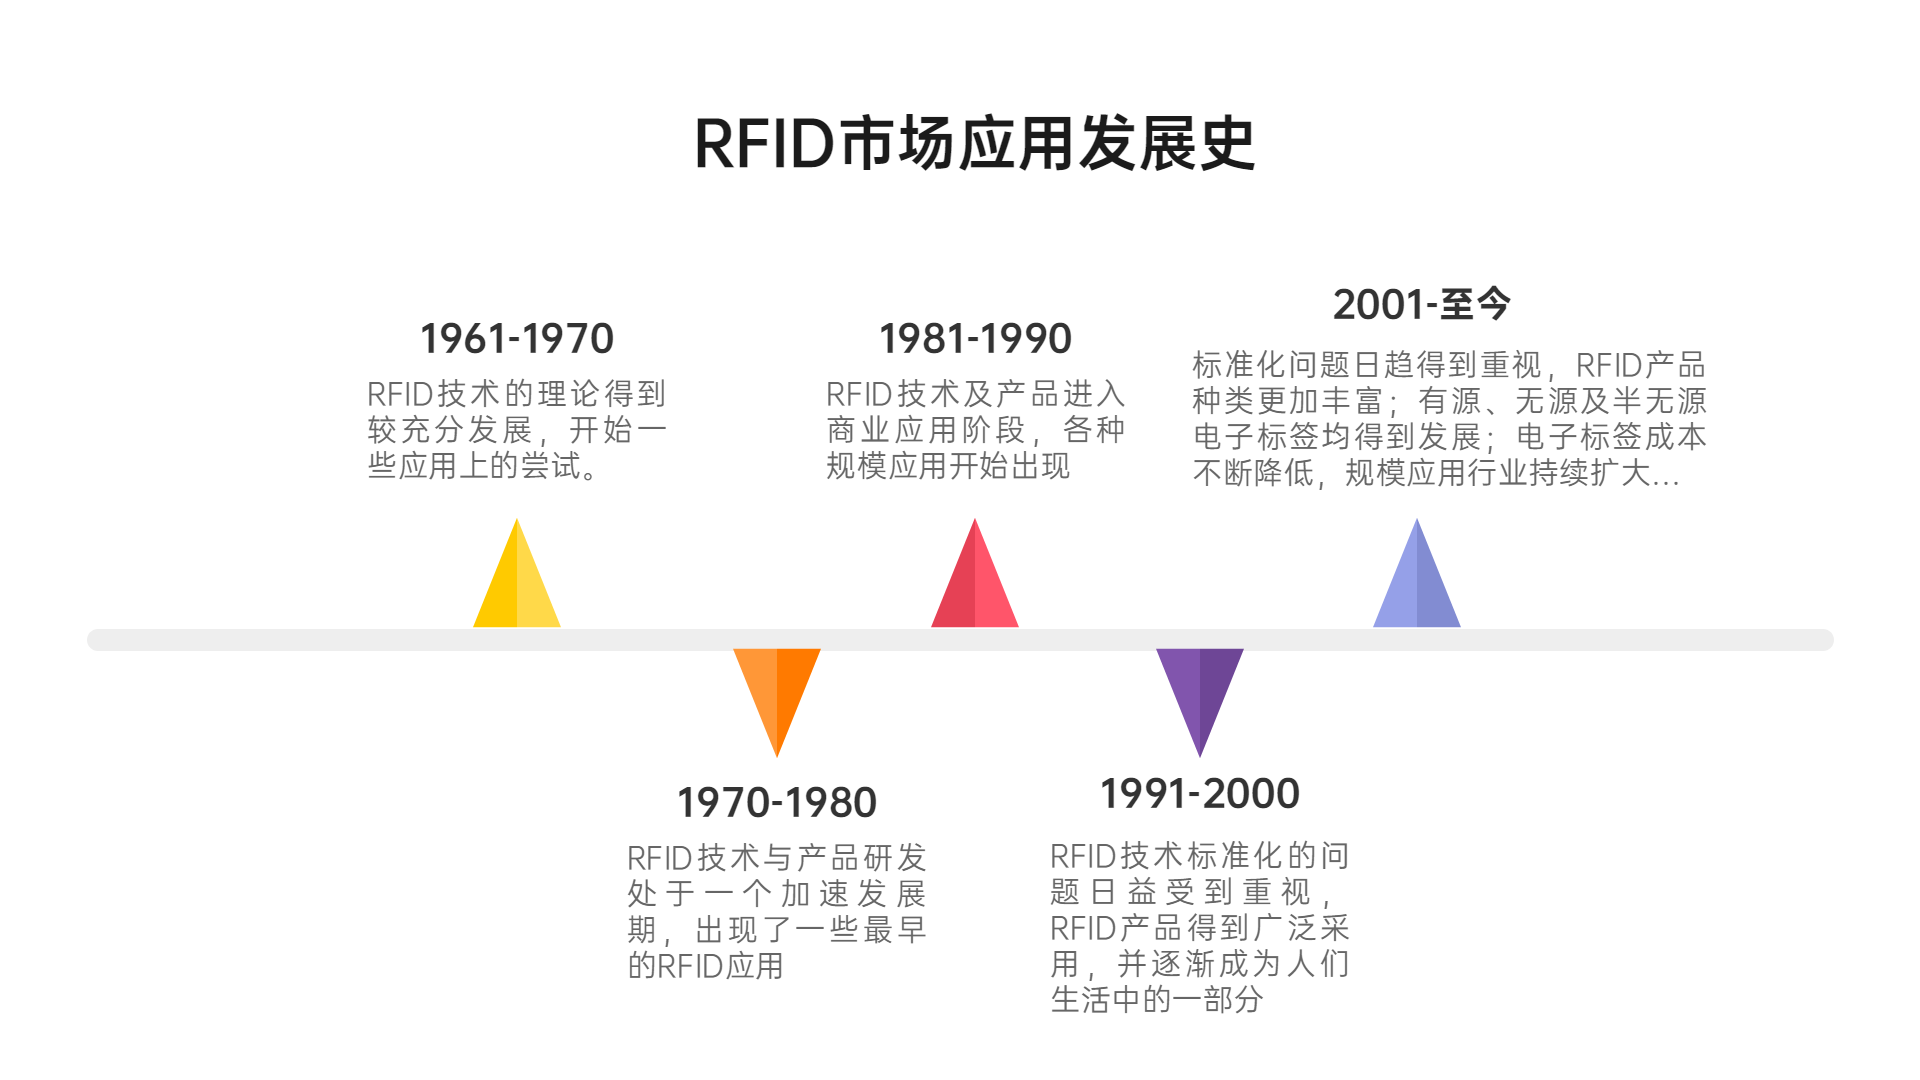 「阿库课堂」RFID基础知识第2期 · 历史发展